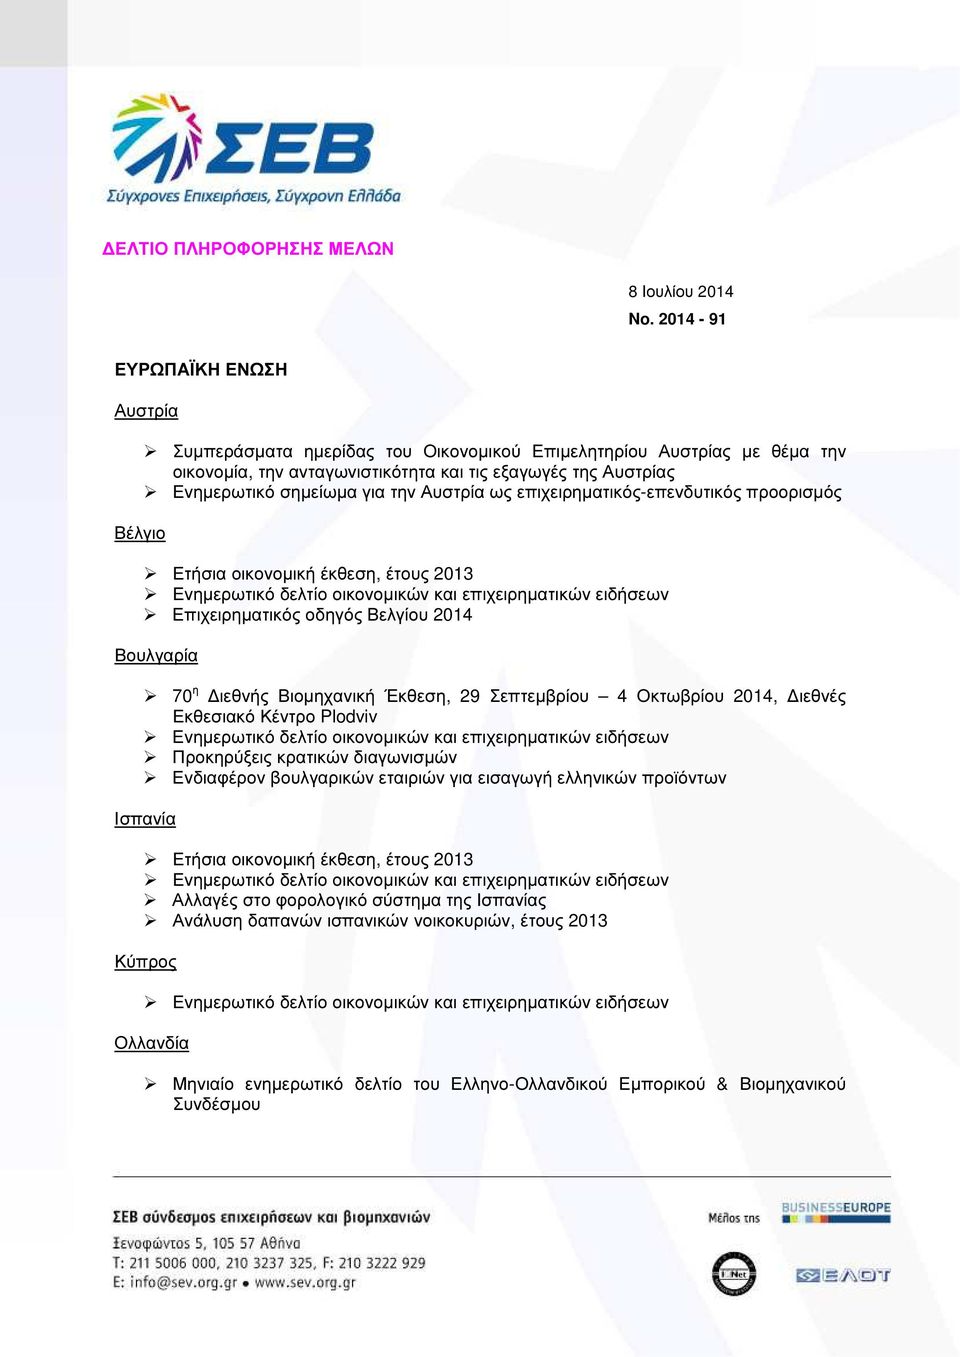 Ενηµερωτικό σηµείωµα για την Αυστρία ως επιχειρηµατικός-επενδυτικός προορισµός Επιχειρηµατικός οδηγός Βελγίου 2014 Βουλγαρία 70 η ιεθνής Βιοµηχανική Έκθεση, 29 Σεπτεµβρίου 4 Οκτωβρίου